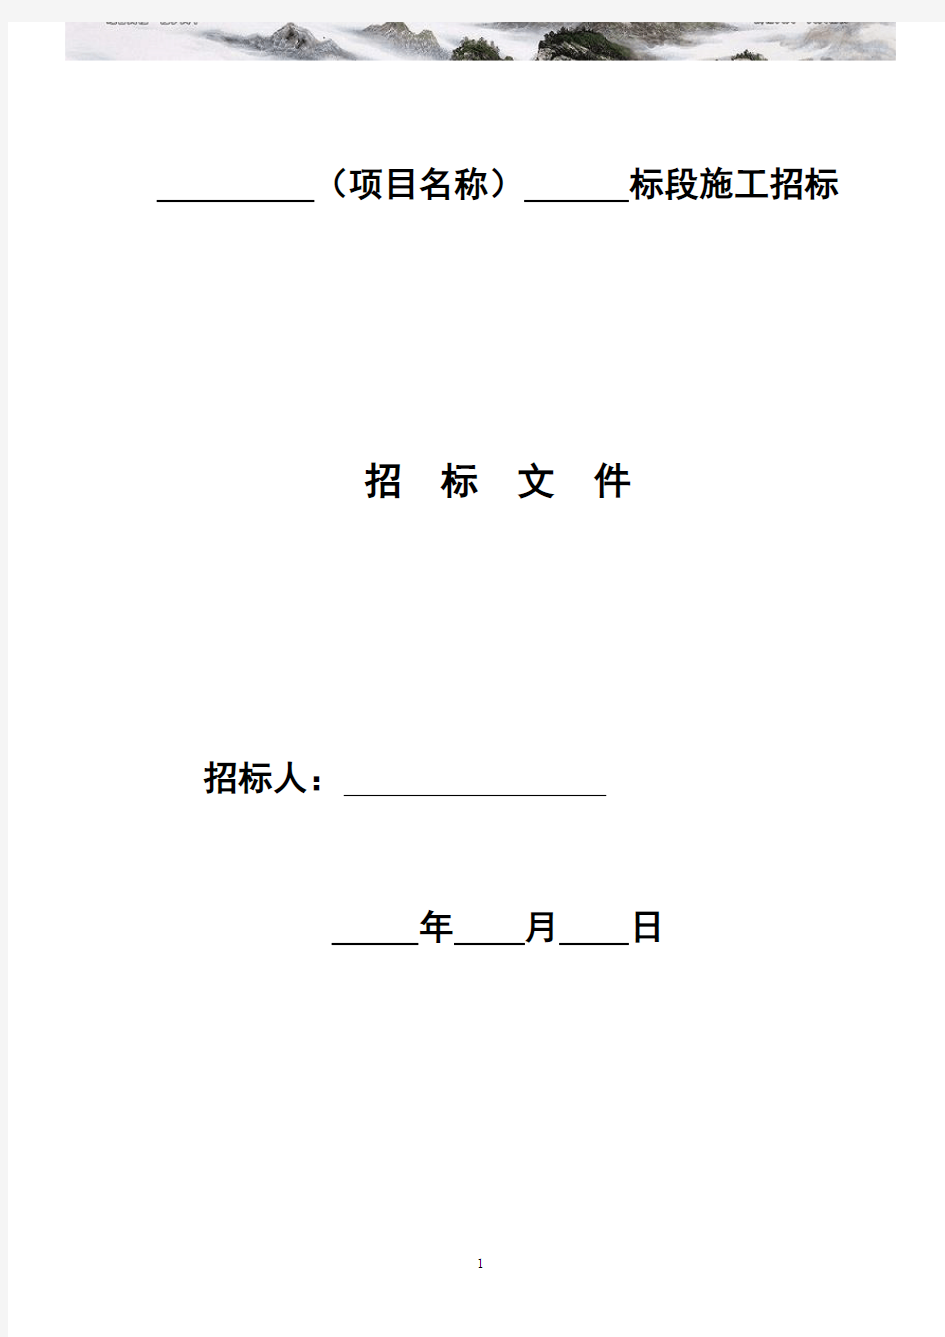 四川省房屋建筑和市政工程标准施工招标文件版